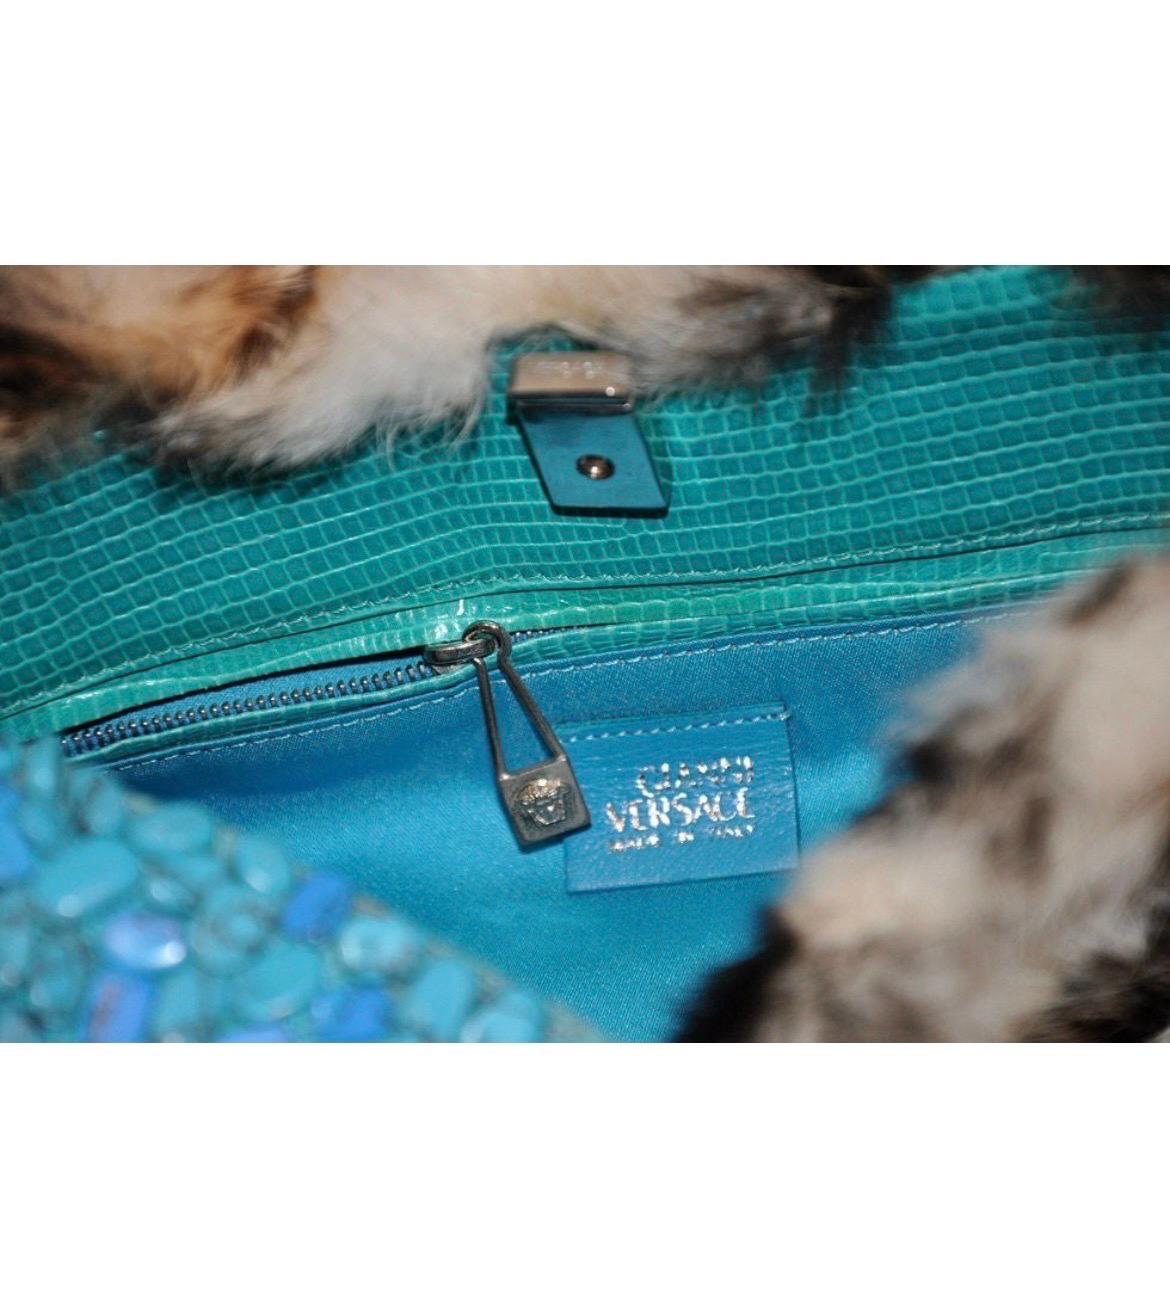 1999 Rare Gianni Versace Runway Animal print Fur Handbag with Turquoise Stones For Sale 1